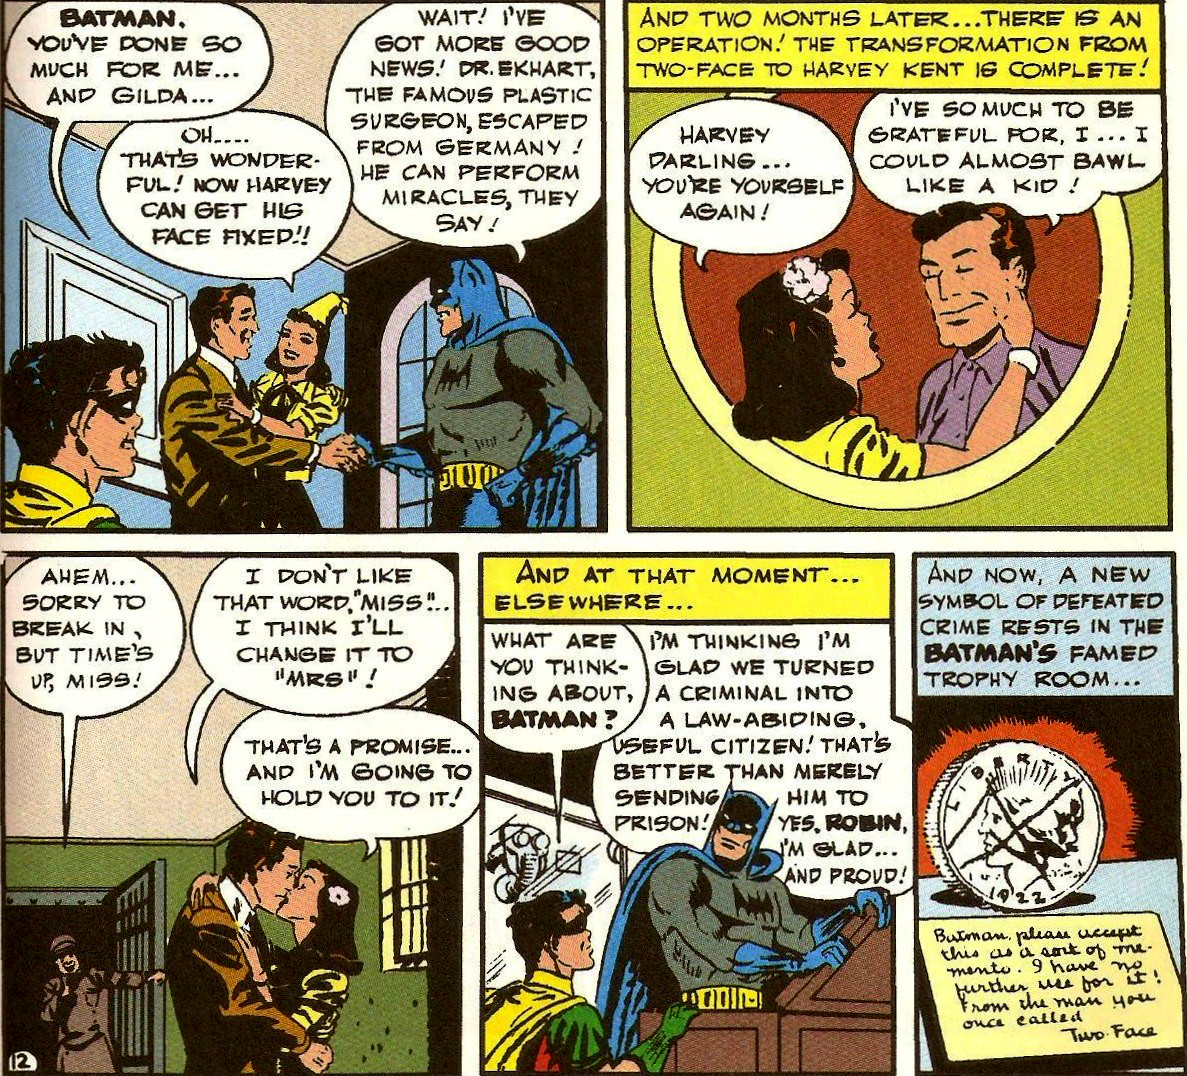 From Detective Comics (Vol. 1) #80 (1943)